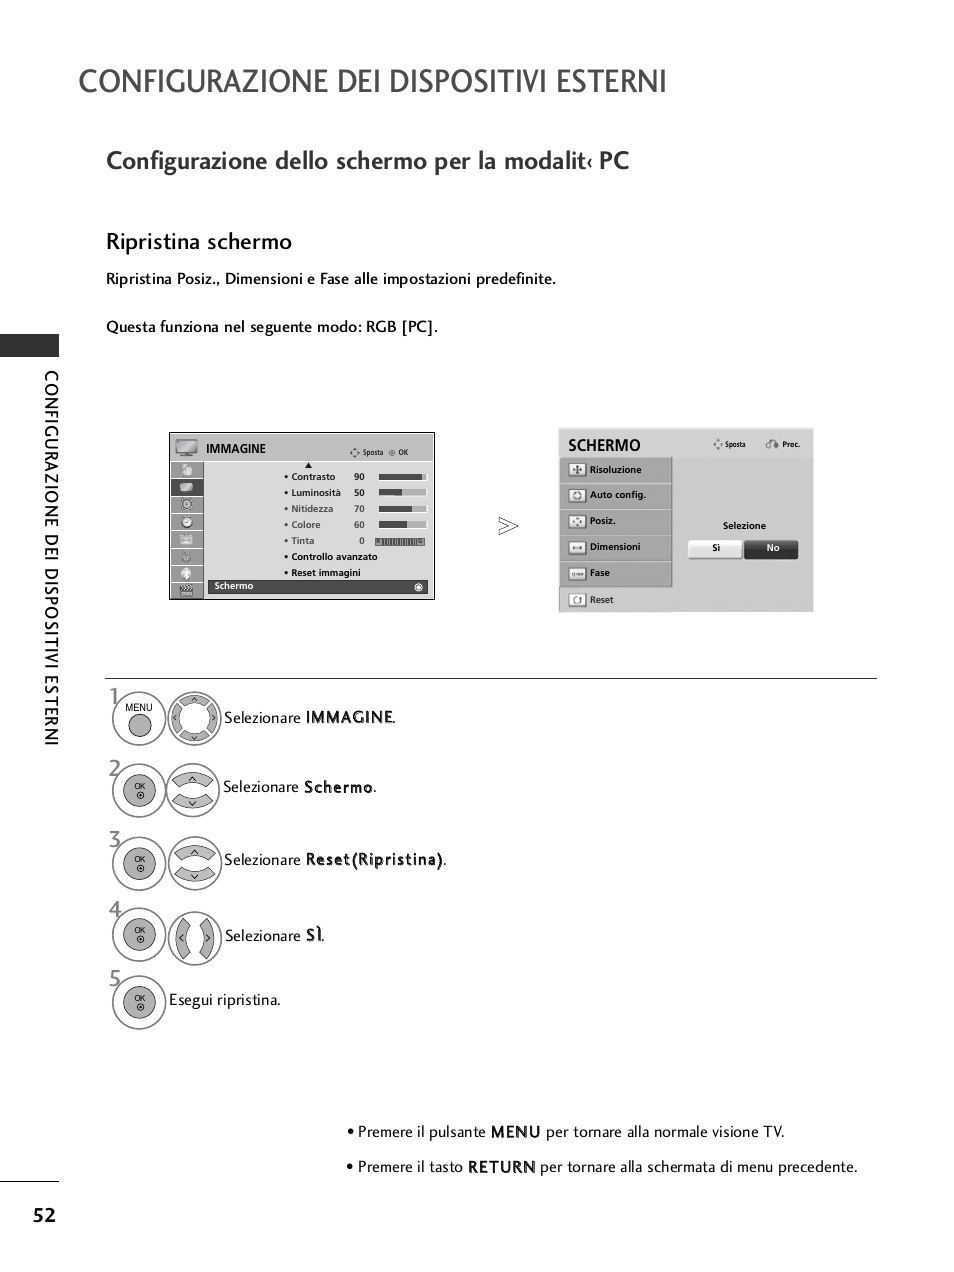 Configurazione dello schermo per la modalit‹ pc, Configurazione dei dispositivi esterni, Ripristina schermo | Configur azione dei dispositivi esterni | LG 32LH40 Manuale d'uso | Pagina 54 / 226